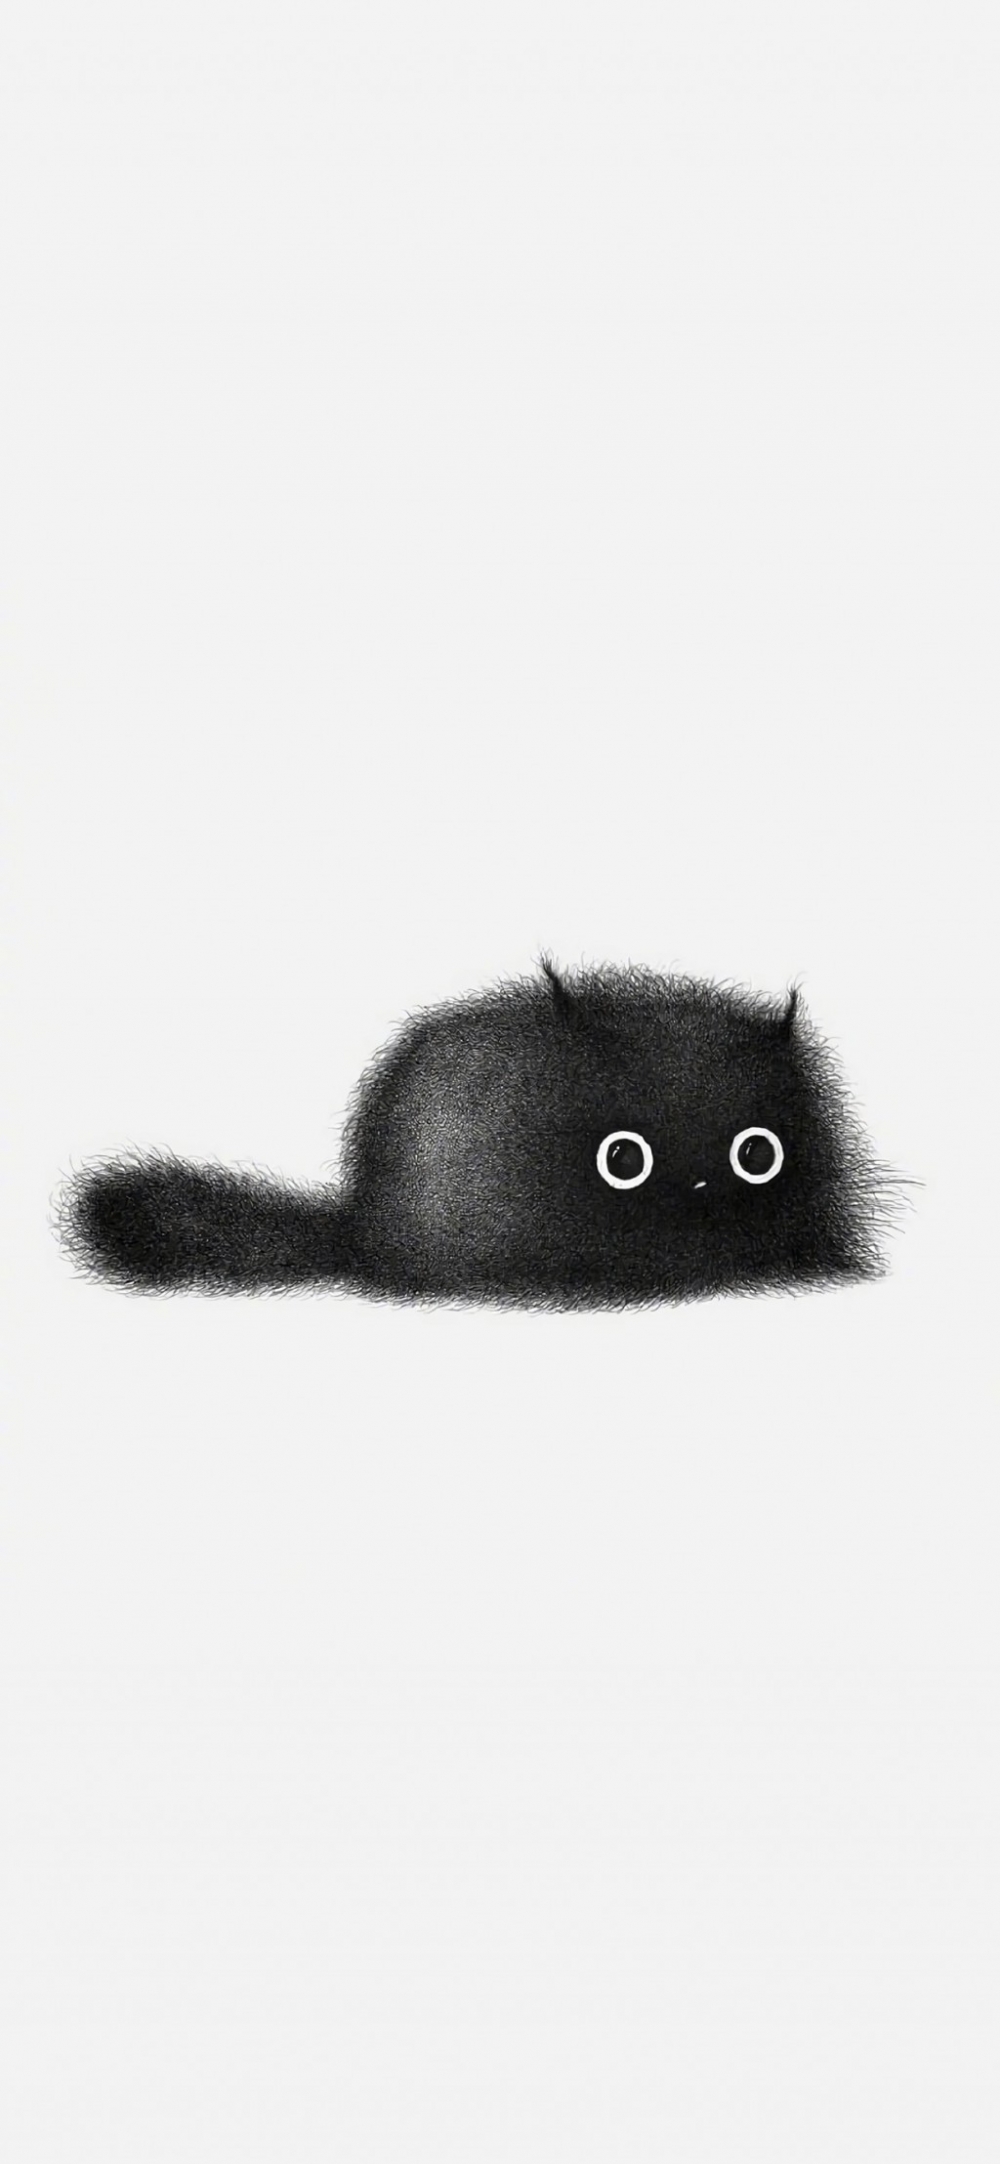 手绘全身黑色毛发猫咪卡通简约手机壁纸